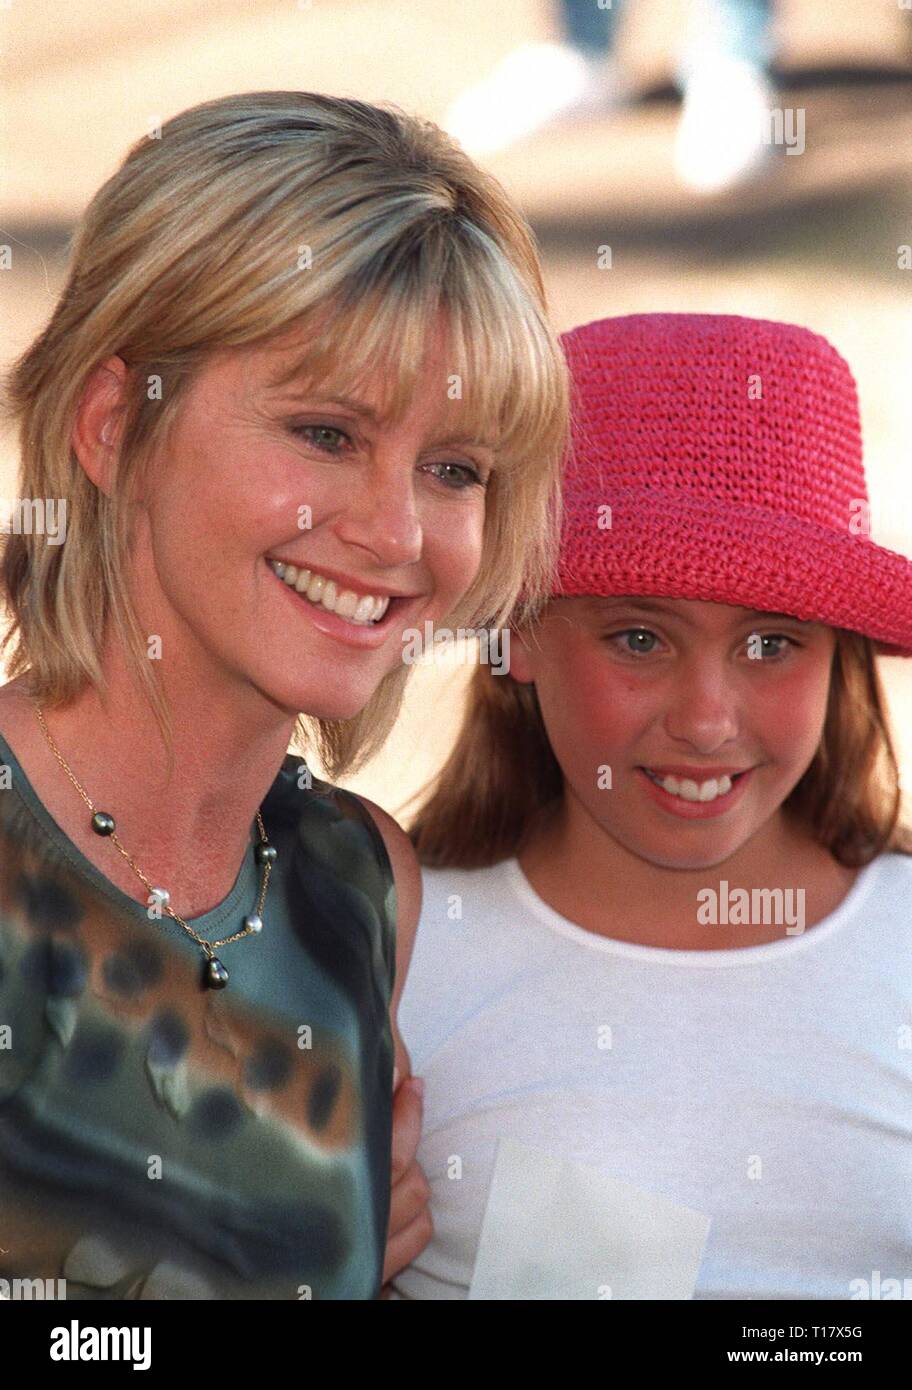 LOS ANGELES, CA. 02 novembre 1997 : la chanteuse Olivia Newton-John & fille Chloe Lattanzi Rose à l'Environmental Media Awards à Los Angeles. Banque D'Images